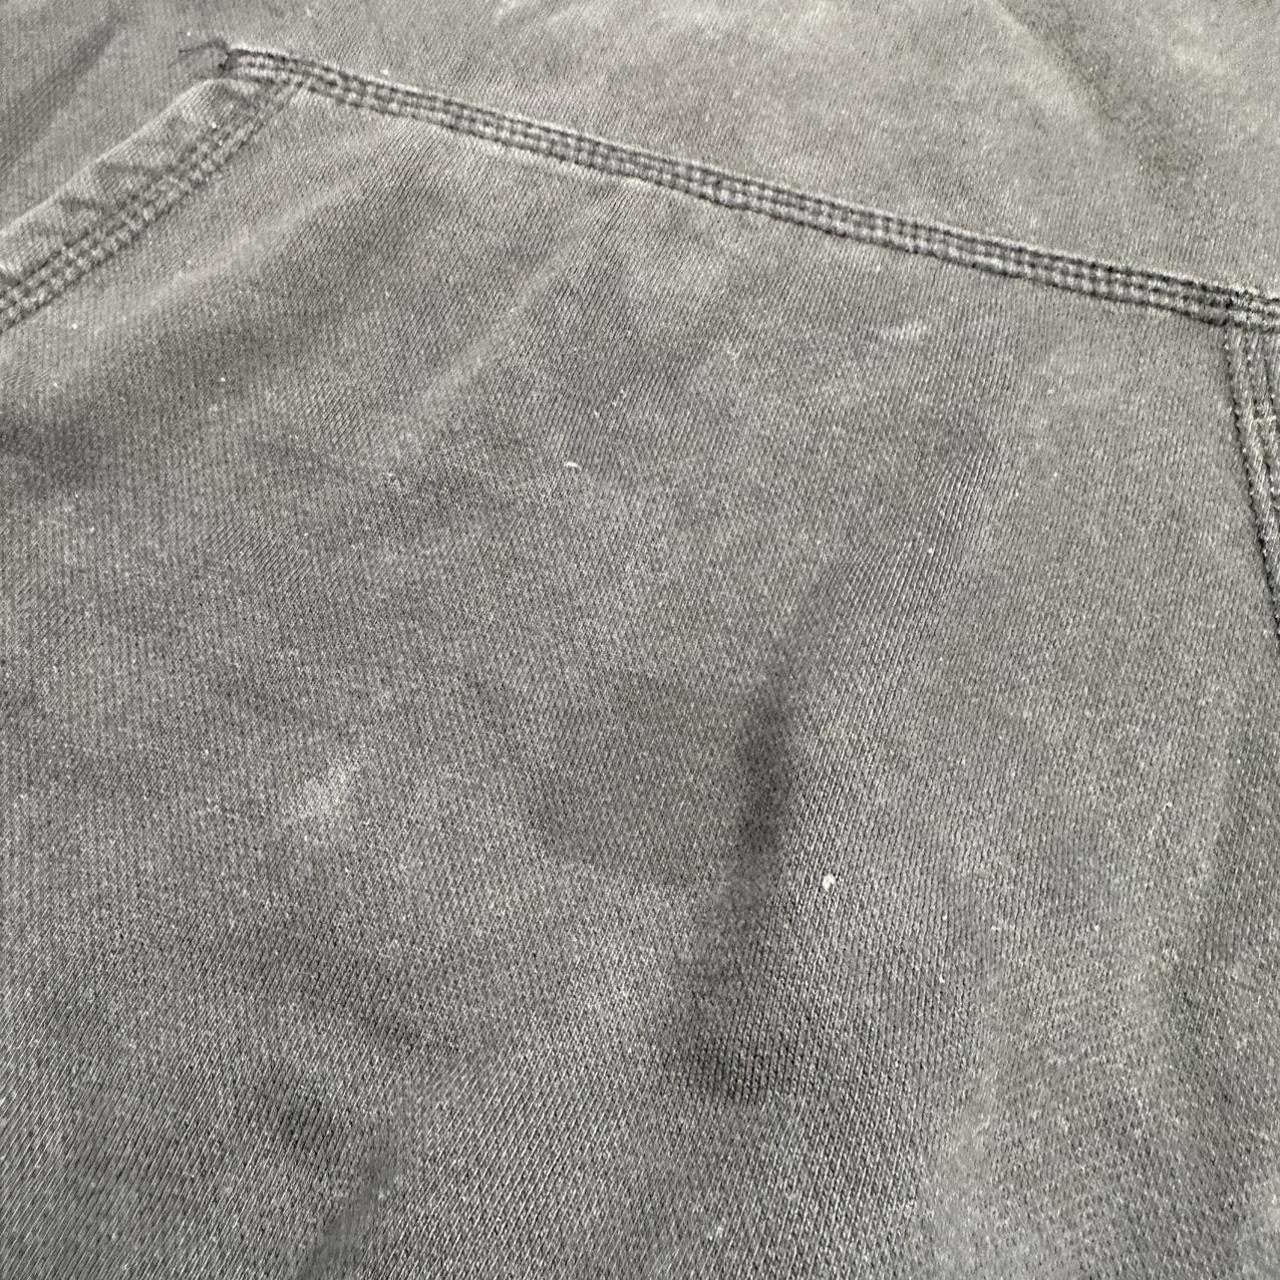 Nike hoodie Small stains - Depop